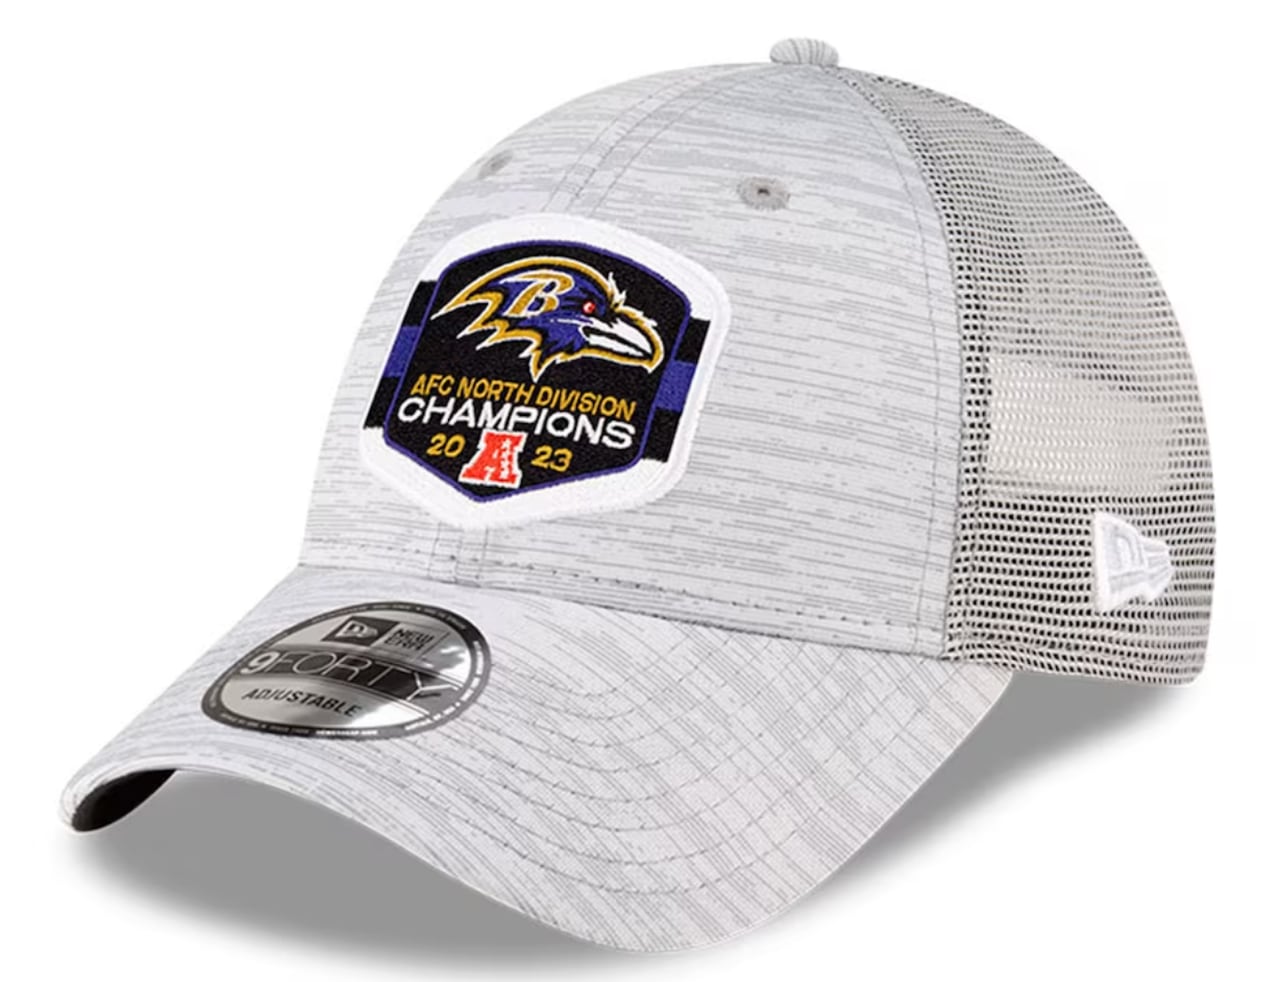 Baltimore Ravens hat